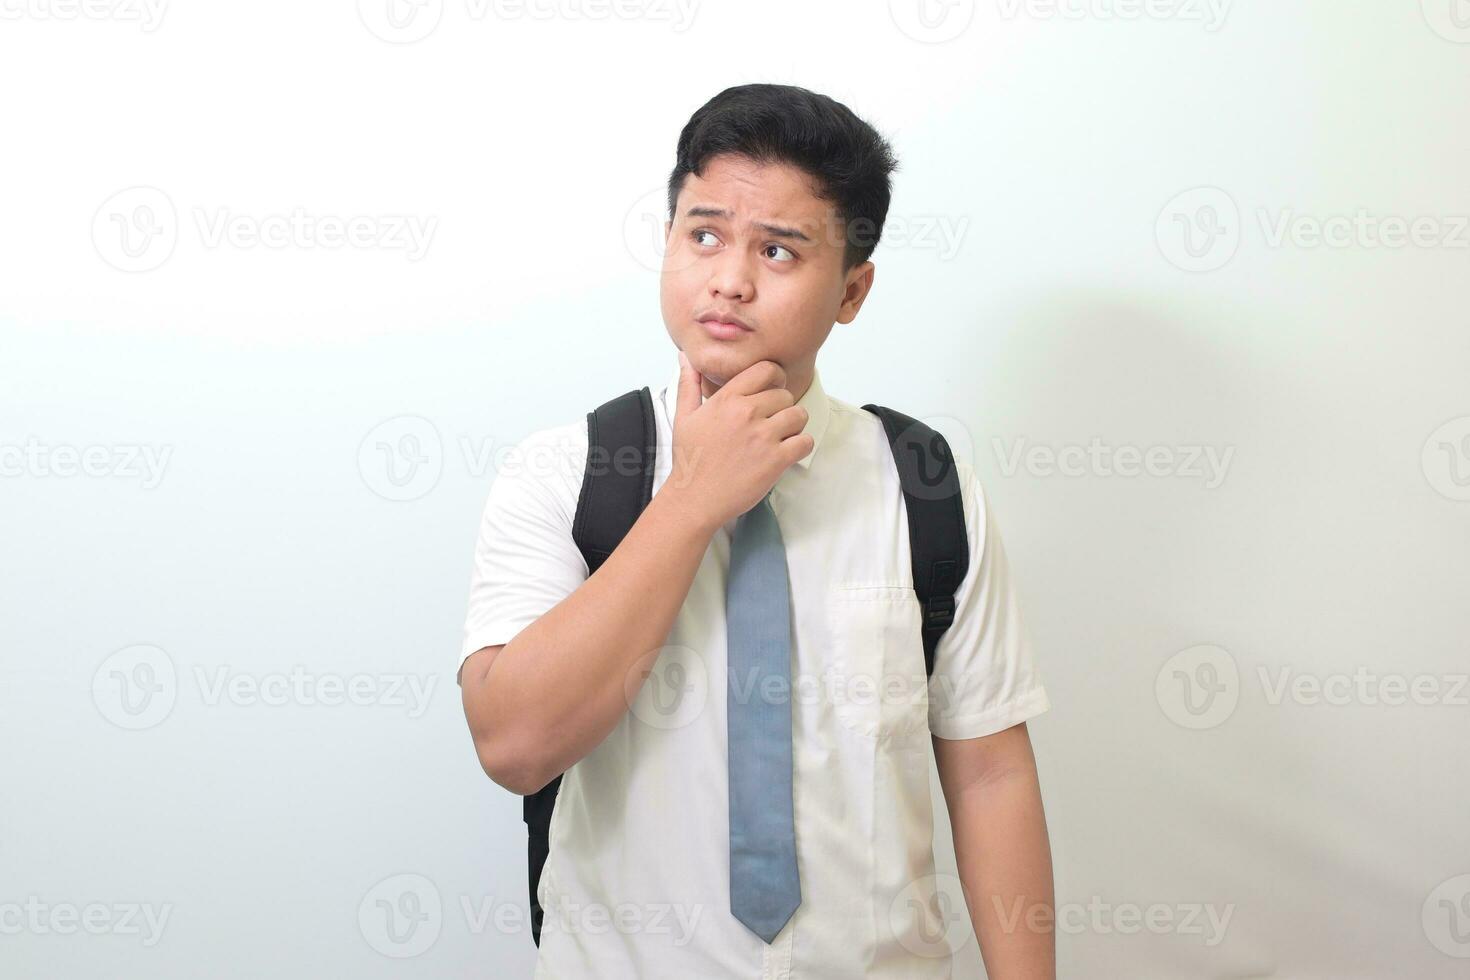 indonesiska senior hög skola studerande bär vit skjorta enhetlig med grå slips och tänkande handla om fråga med hand på haka. isolerat bild på vit bakgrund foto